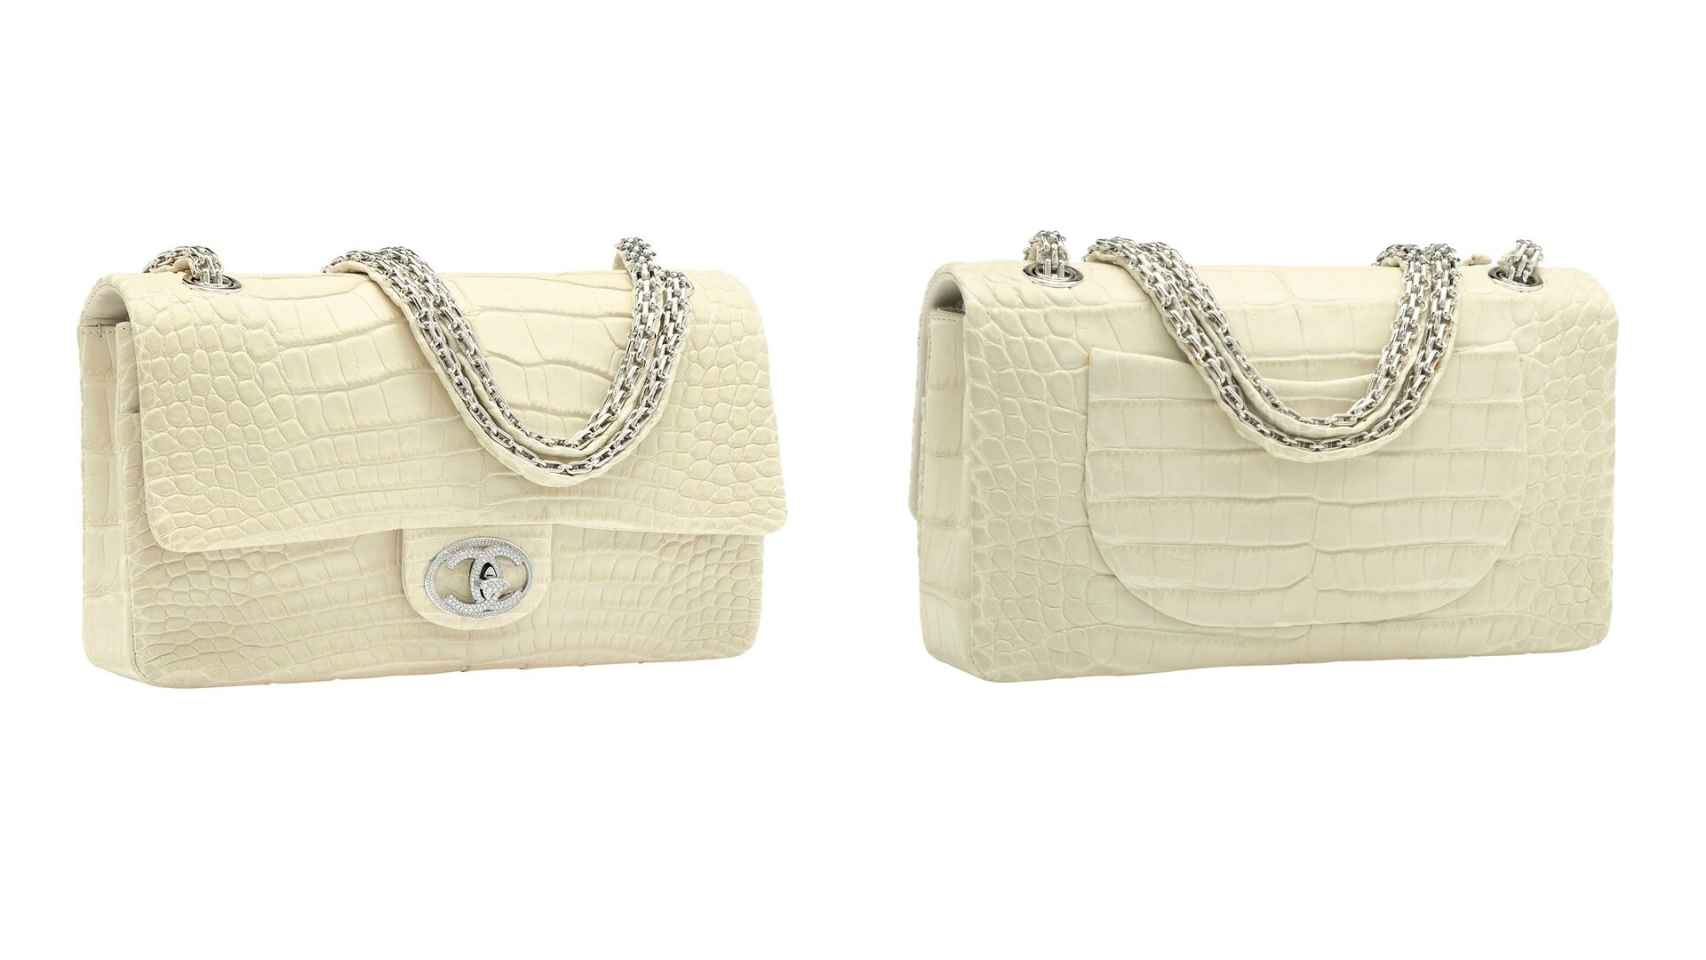 Diamond Forever Classic Bag, el modelo de Chanel que alcanza los 219.000 euros.